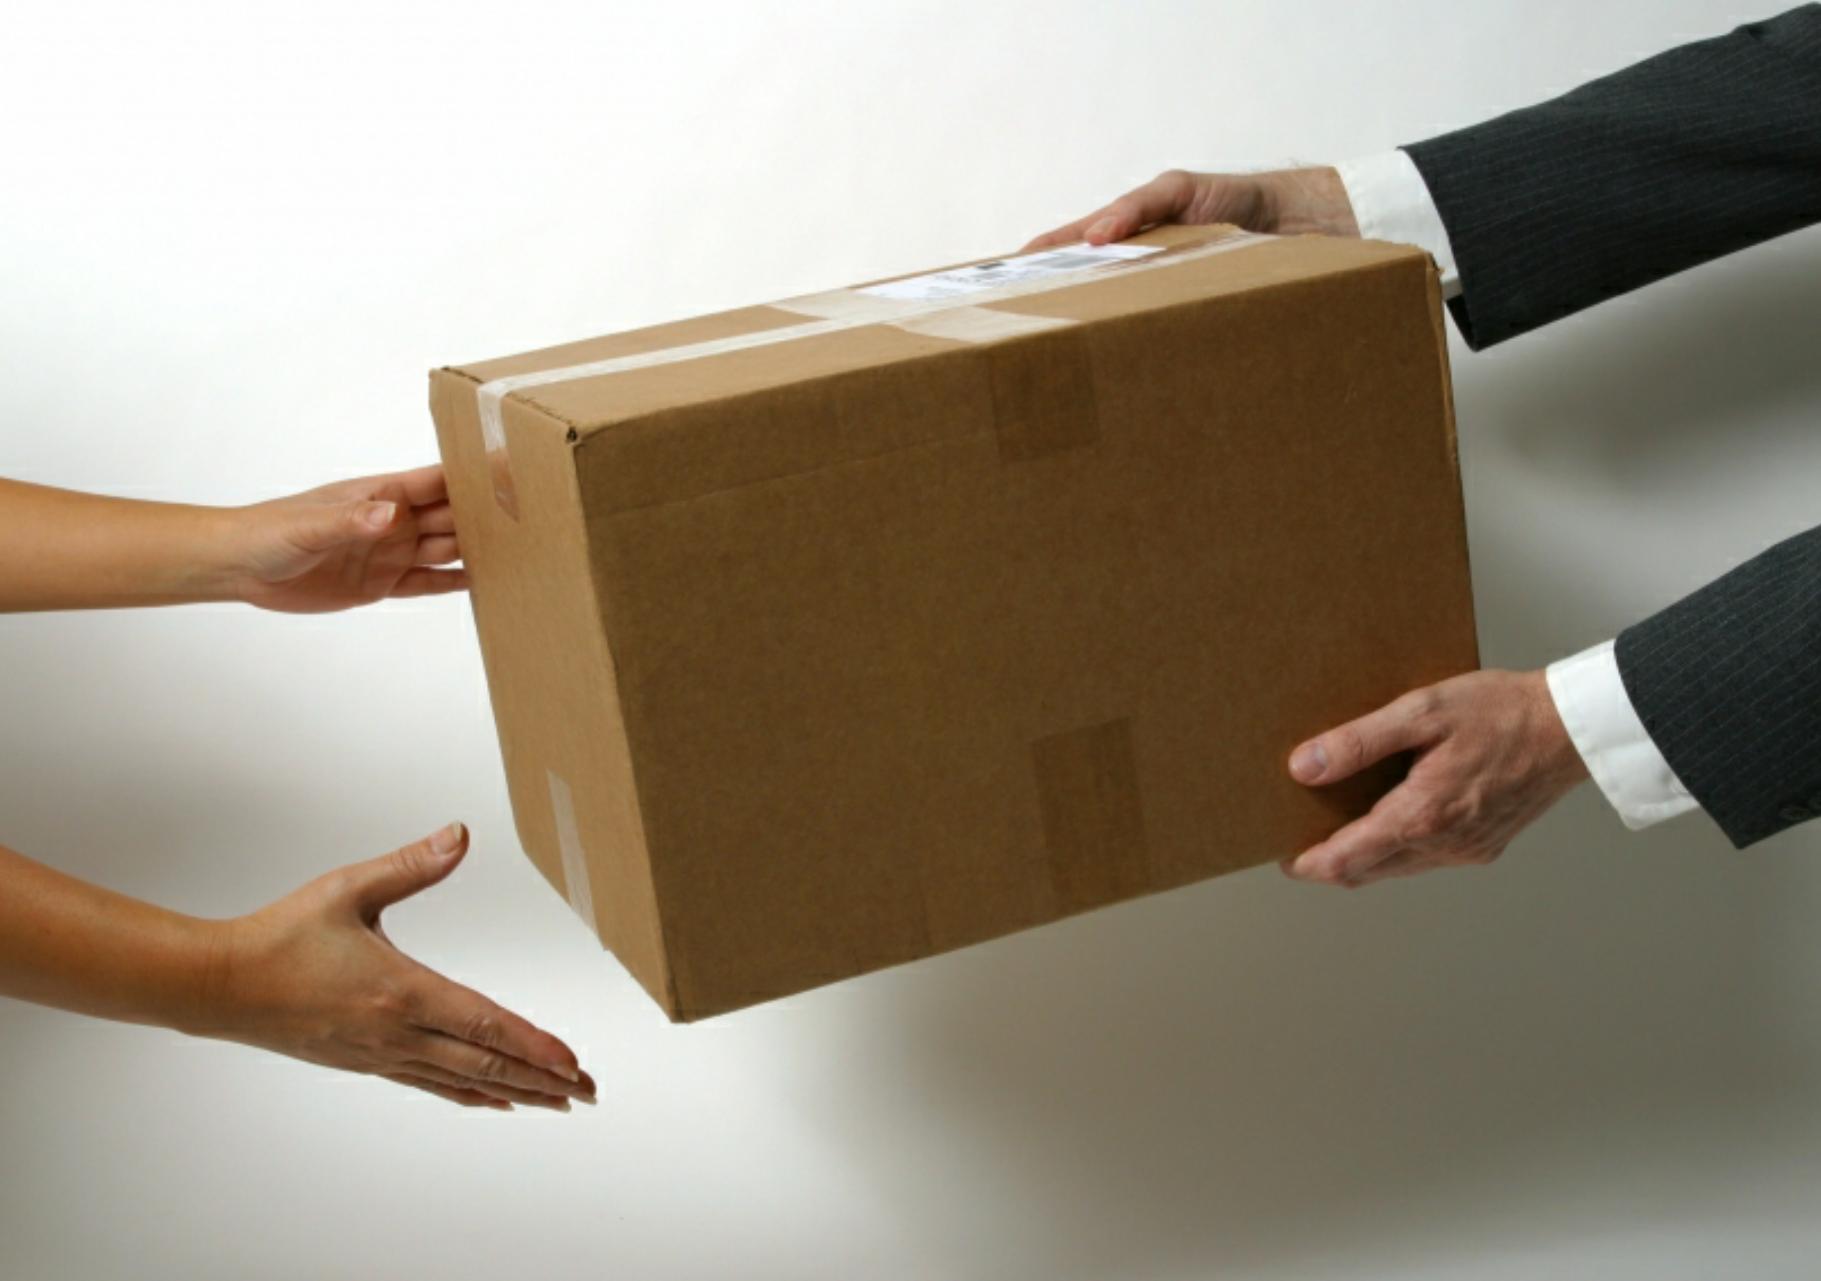 Доставка извинений. Коробки в руках. Руки передают коробку. Передача товара. Передает коробочку в руки.